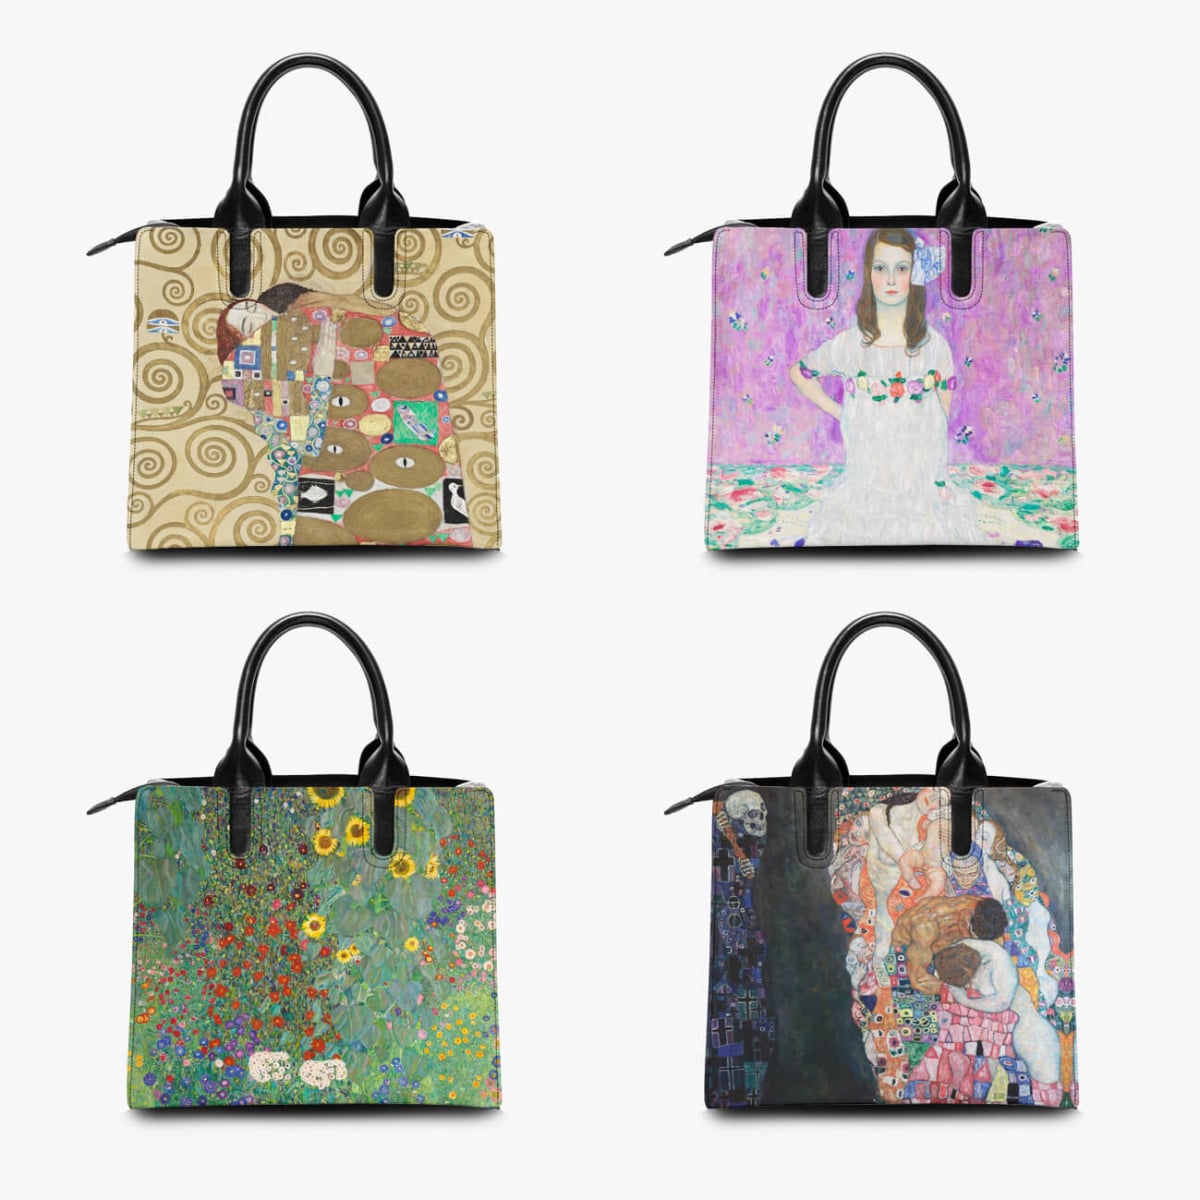 Gustav Klimt’s The Virgin Painting Art Leather Handbag